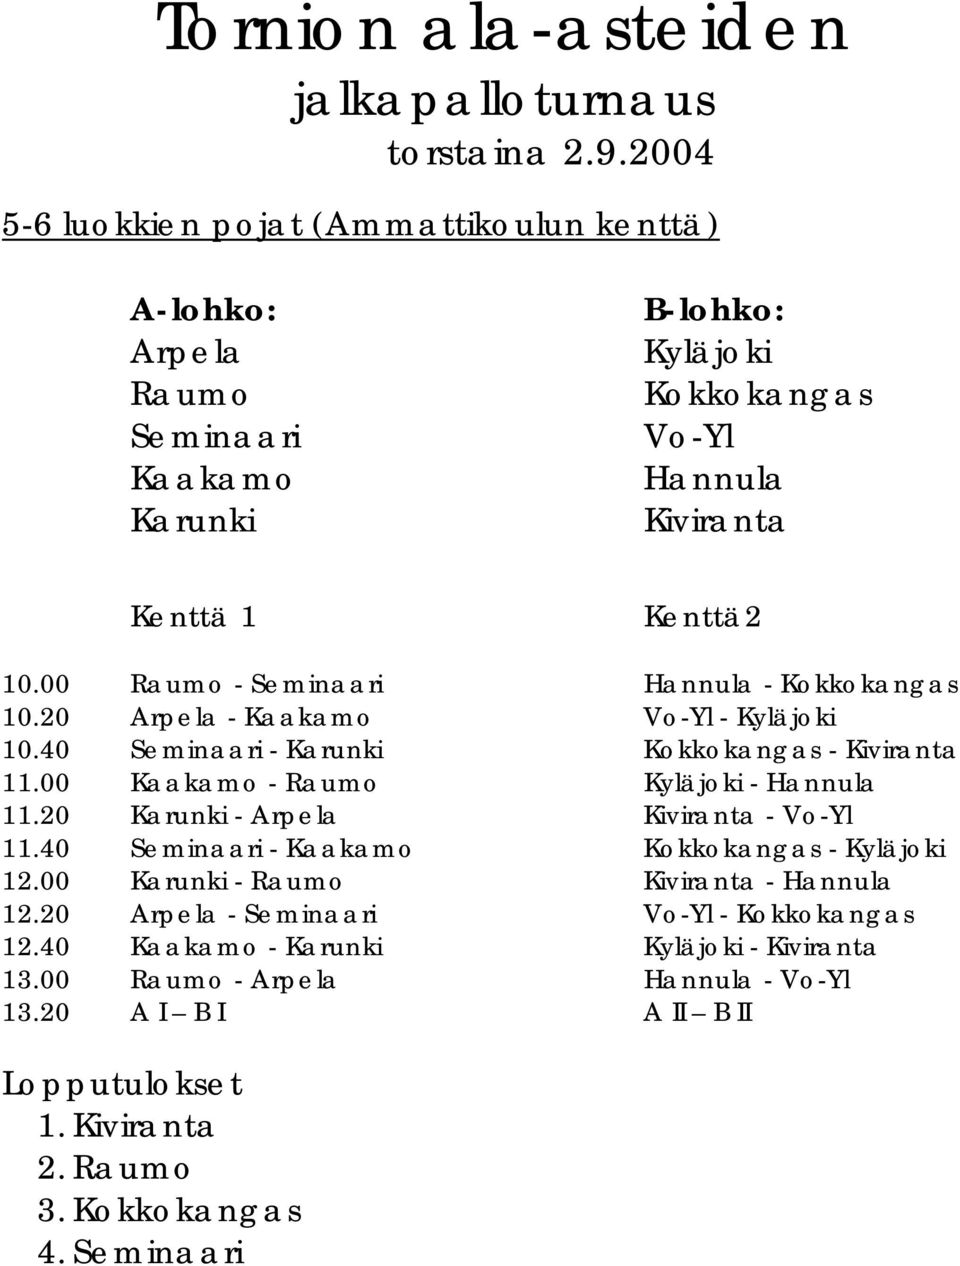 00 Raumo - Seminaari Hannula - Kokkokangas 10.20 Arpela - Kaakamo Vo-Yl - Kyläjoki 10.40 Seminaari - Karunki Kokkokangas - Kiviranta 11.00 Kaakamo - Raumo Kyläjoki - Hannula 11.